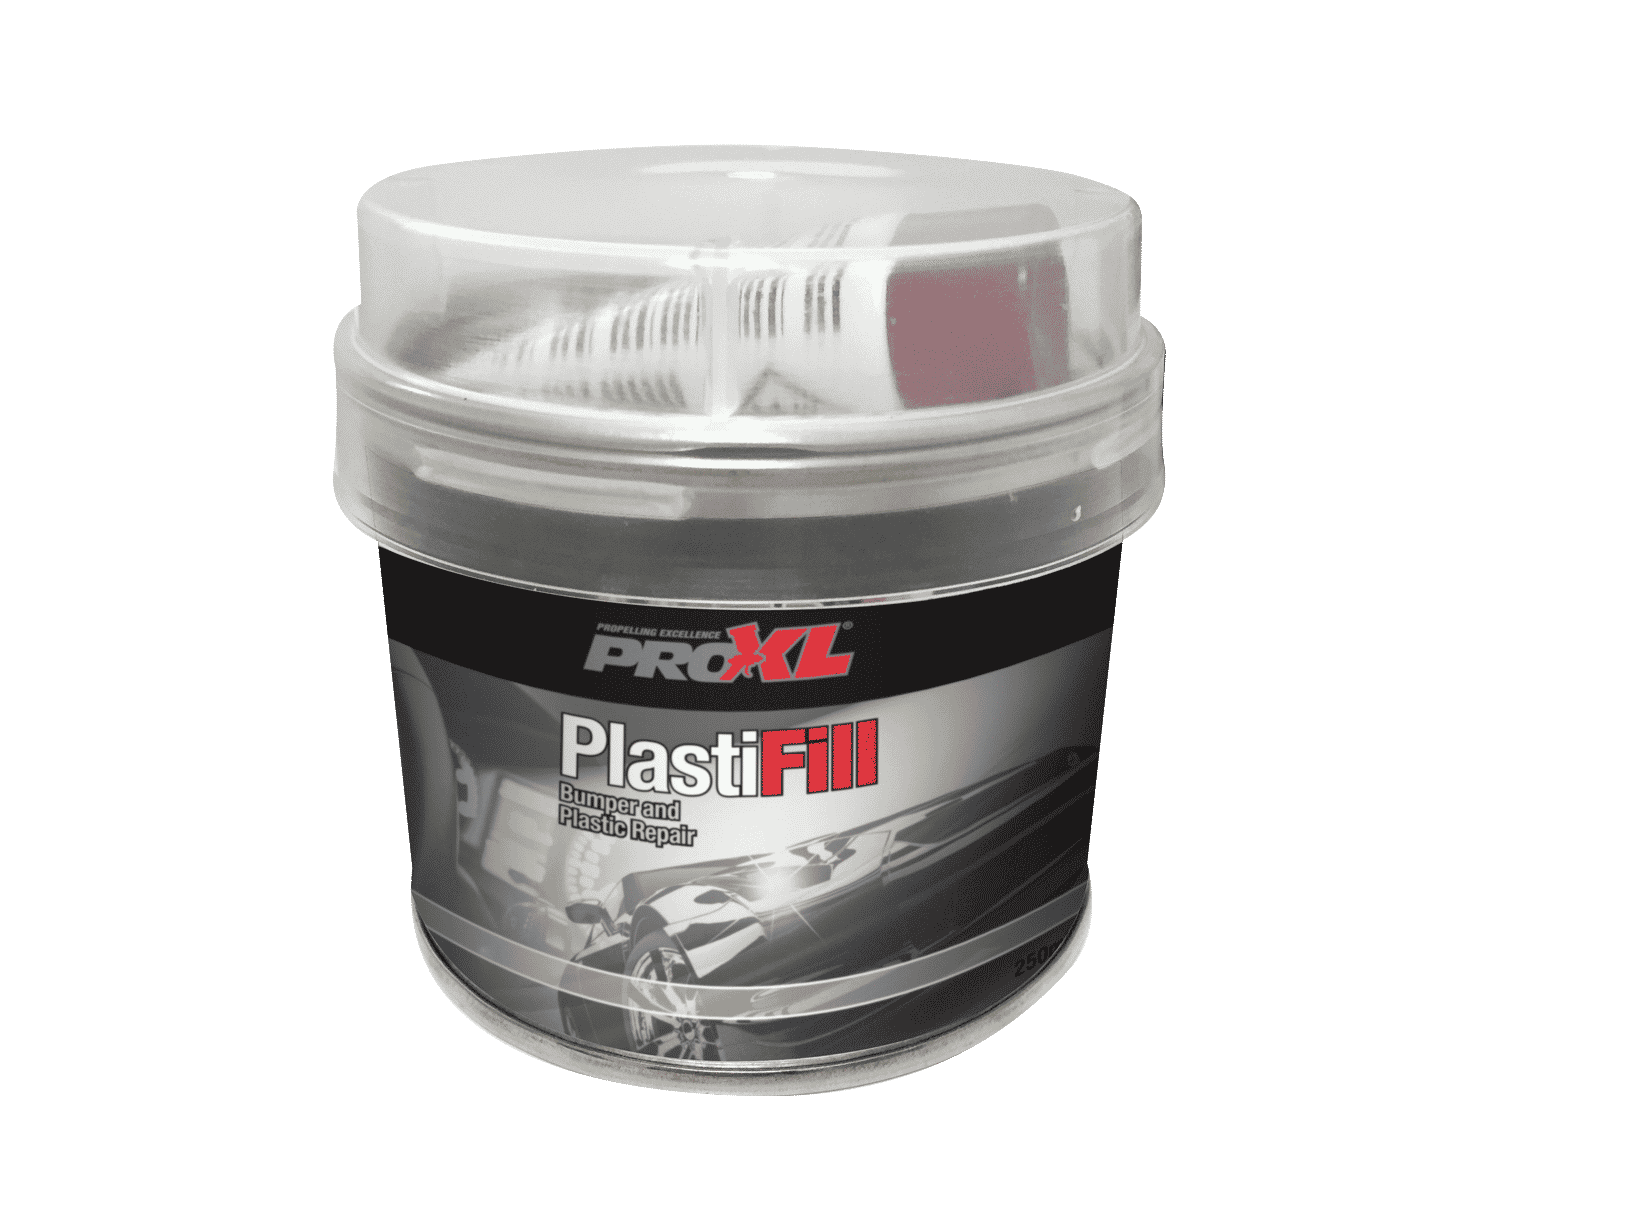 PlastiFill Plastic Filler for Bumper and Trim Repair Product Image